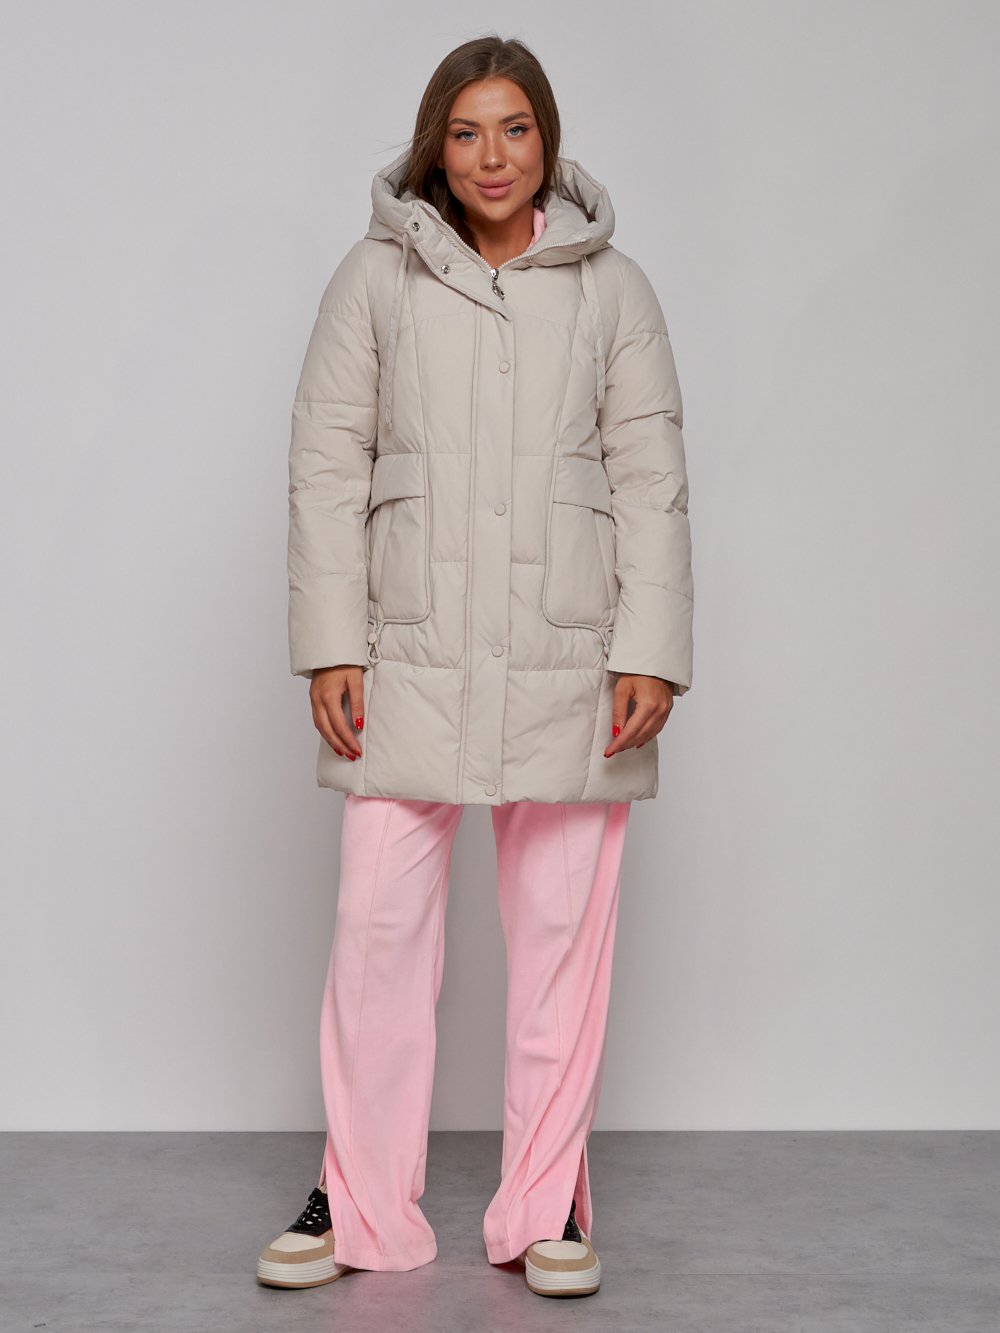 Купить оптом Зимняя женская куртка молодежная с капюшоном бежевого цвета 586821B в Казани